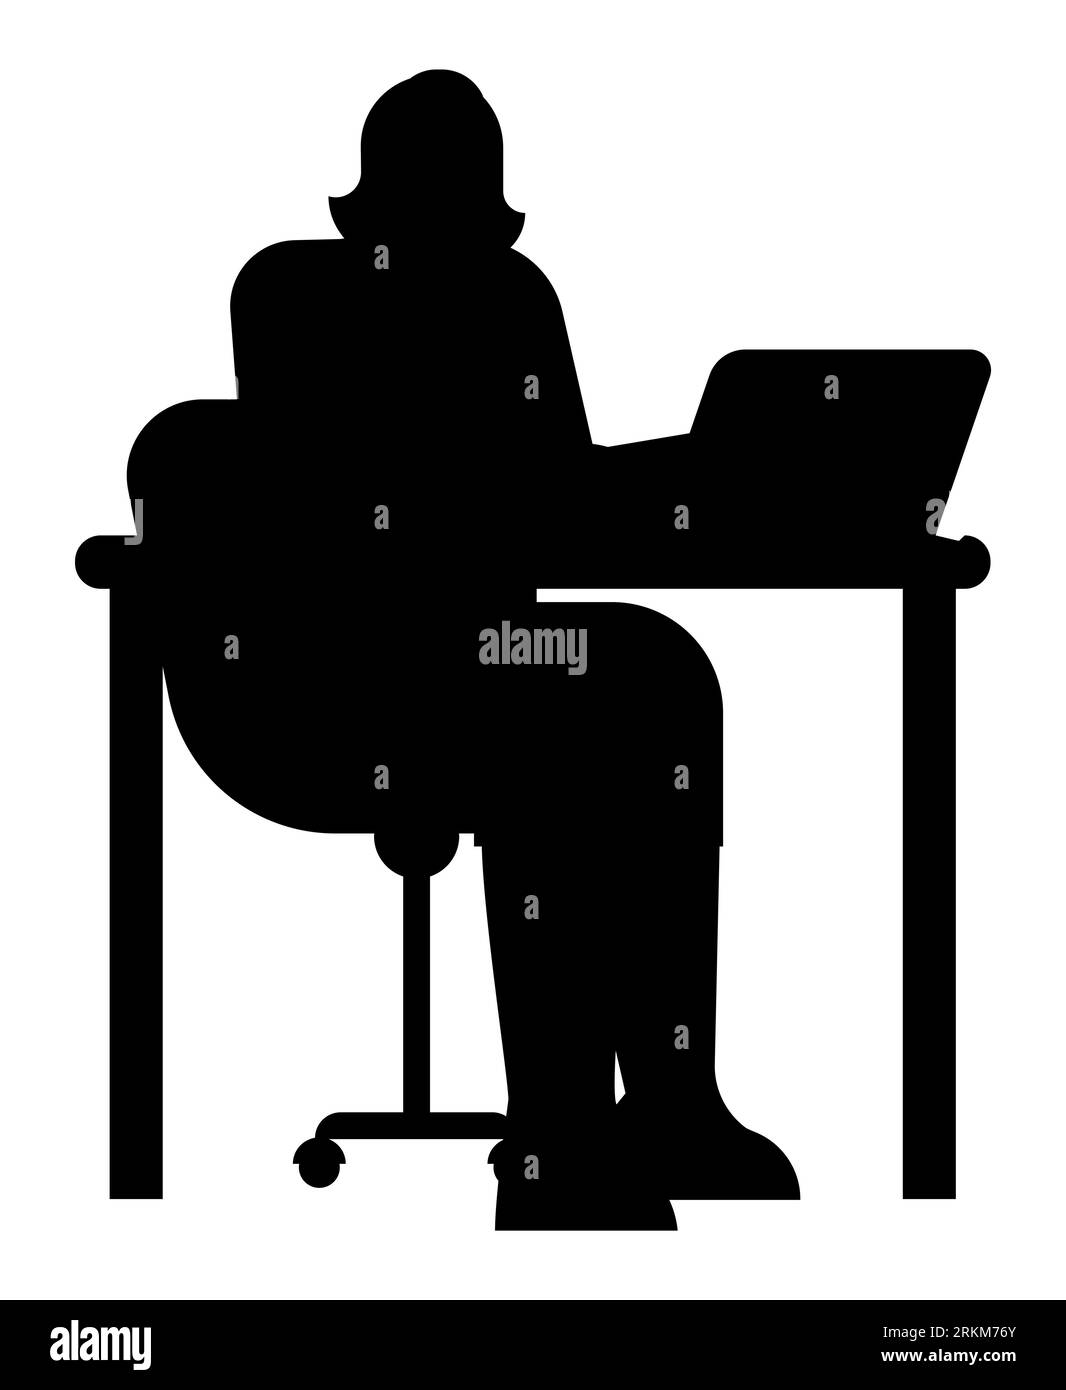 Schwarze Silhouette einer Frau, die einen Laptop verwendet, ruhige professionelle Frau im virtuellen Büro, friedliche Remote-Arbeitsszene, Vektorillustration auf weiß Stock Vektor